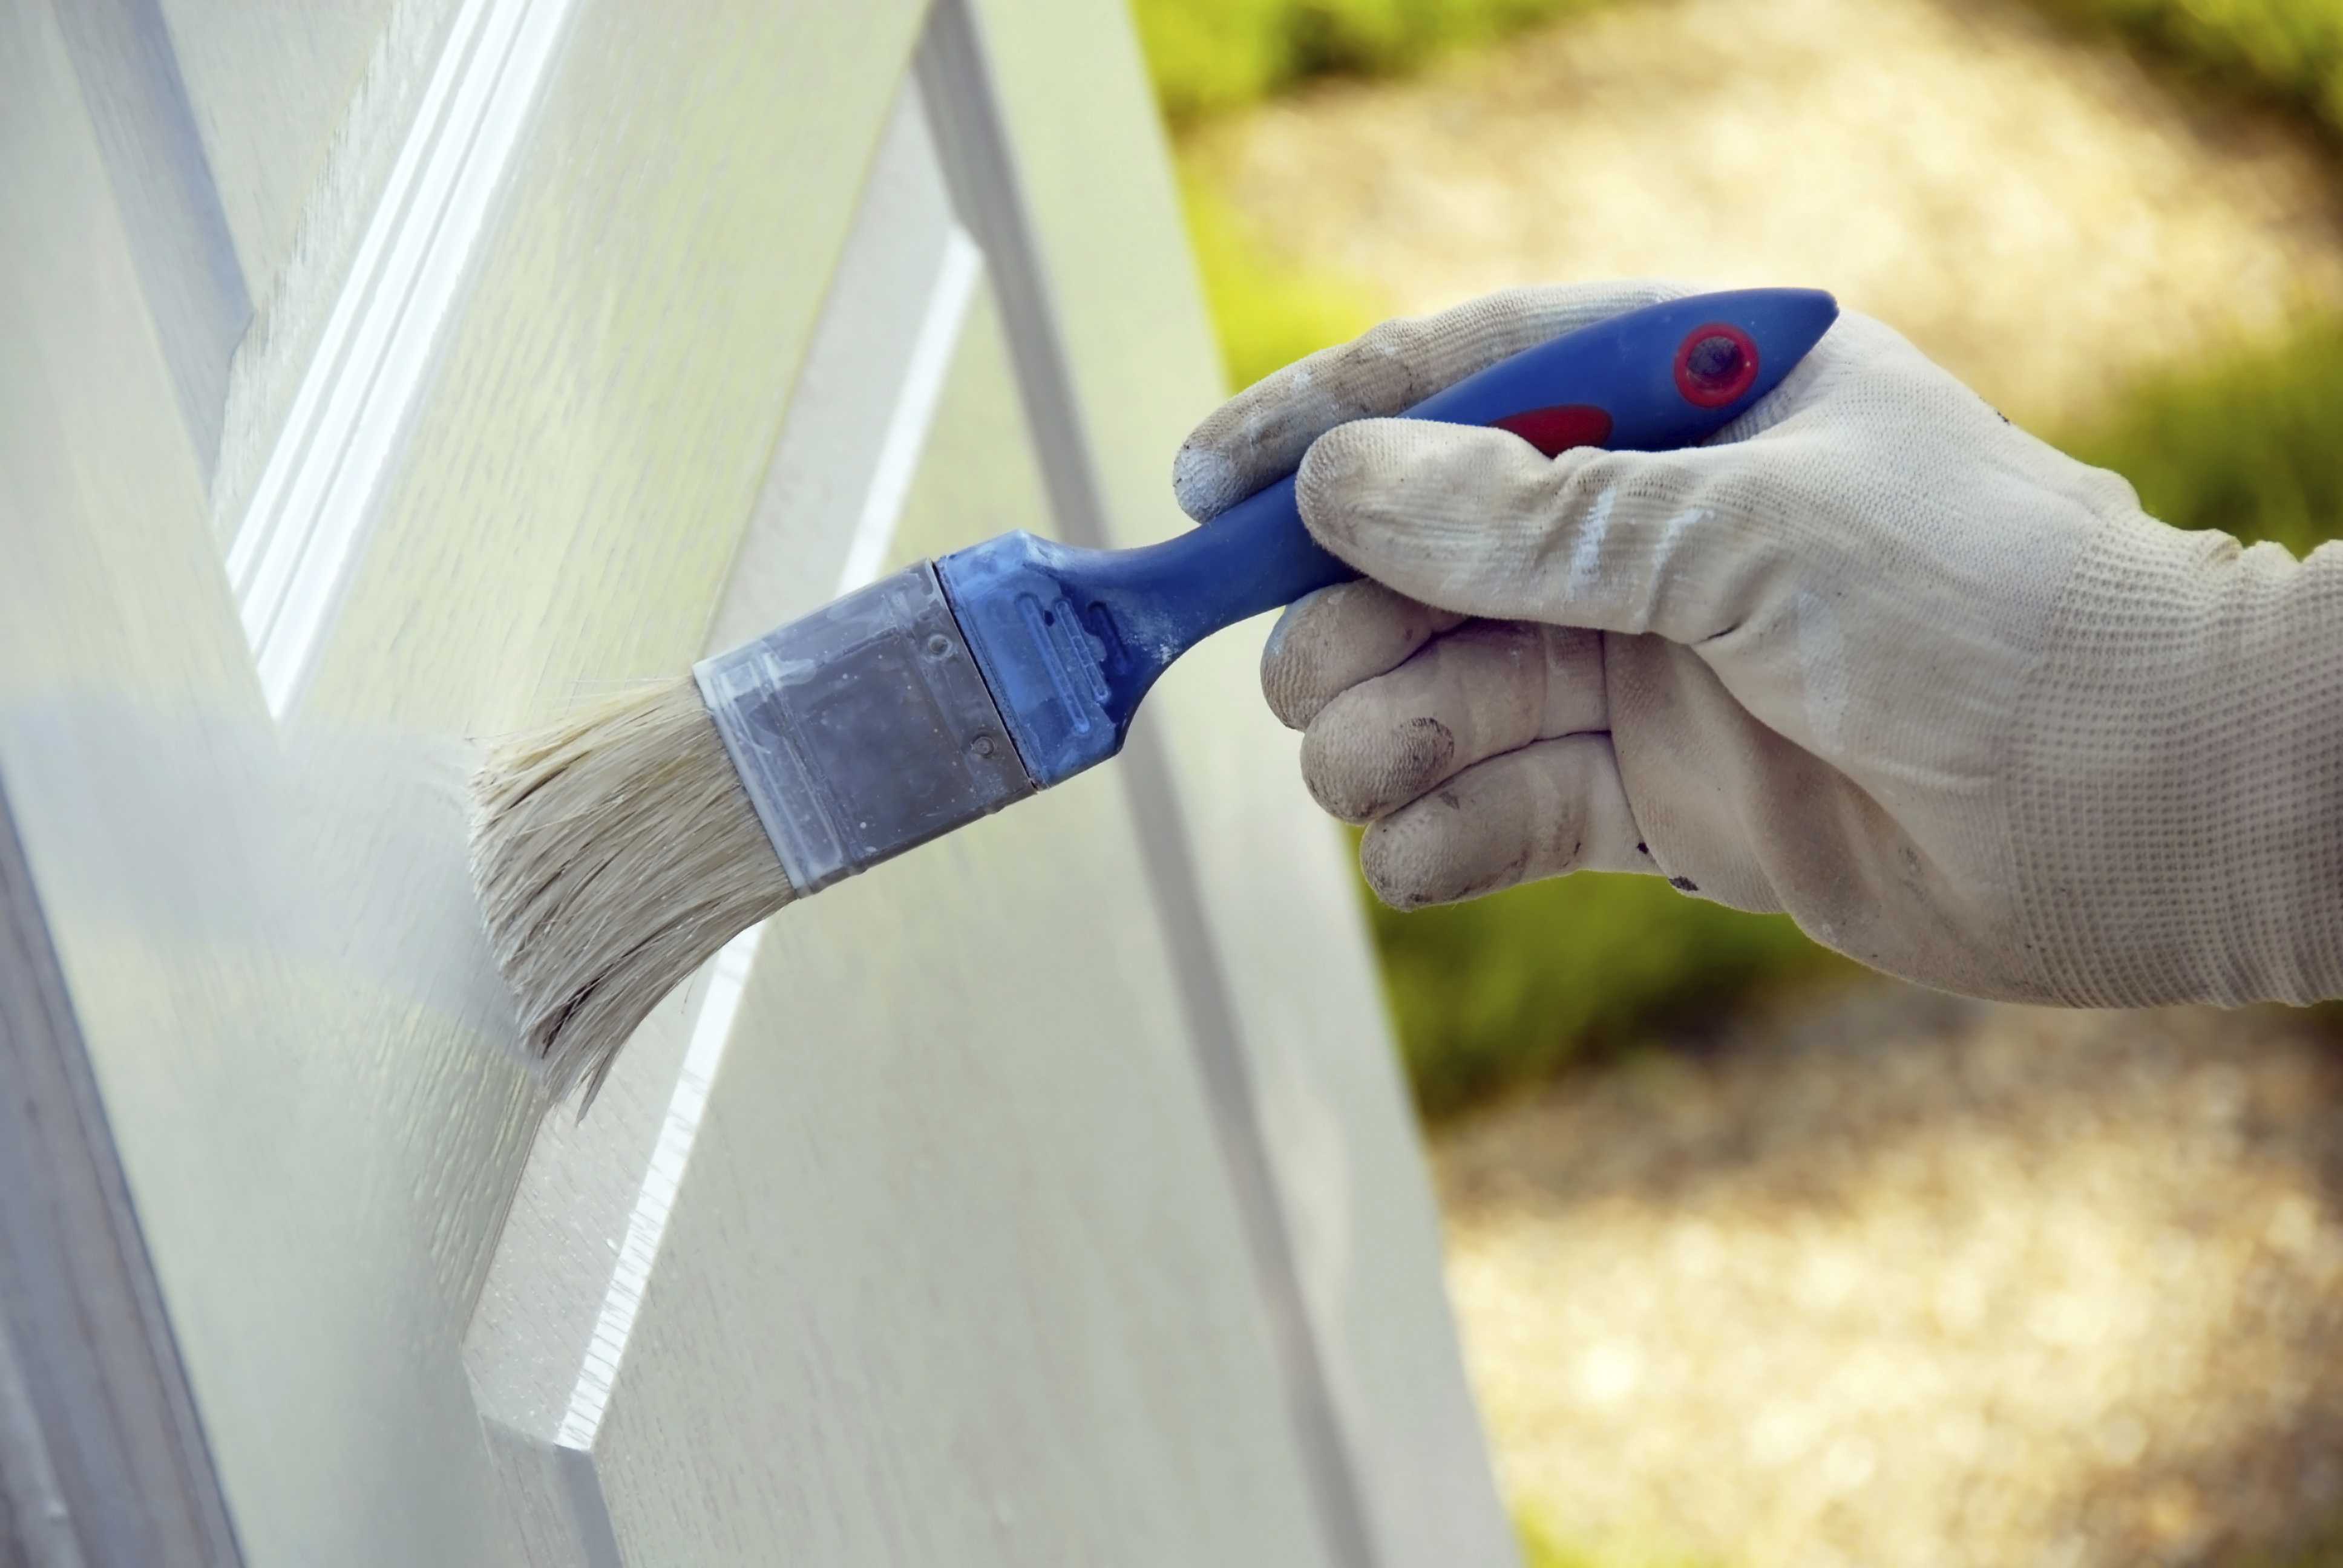 Чем и как покрасить деревянные двери своими руками